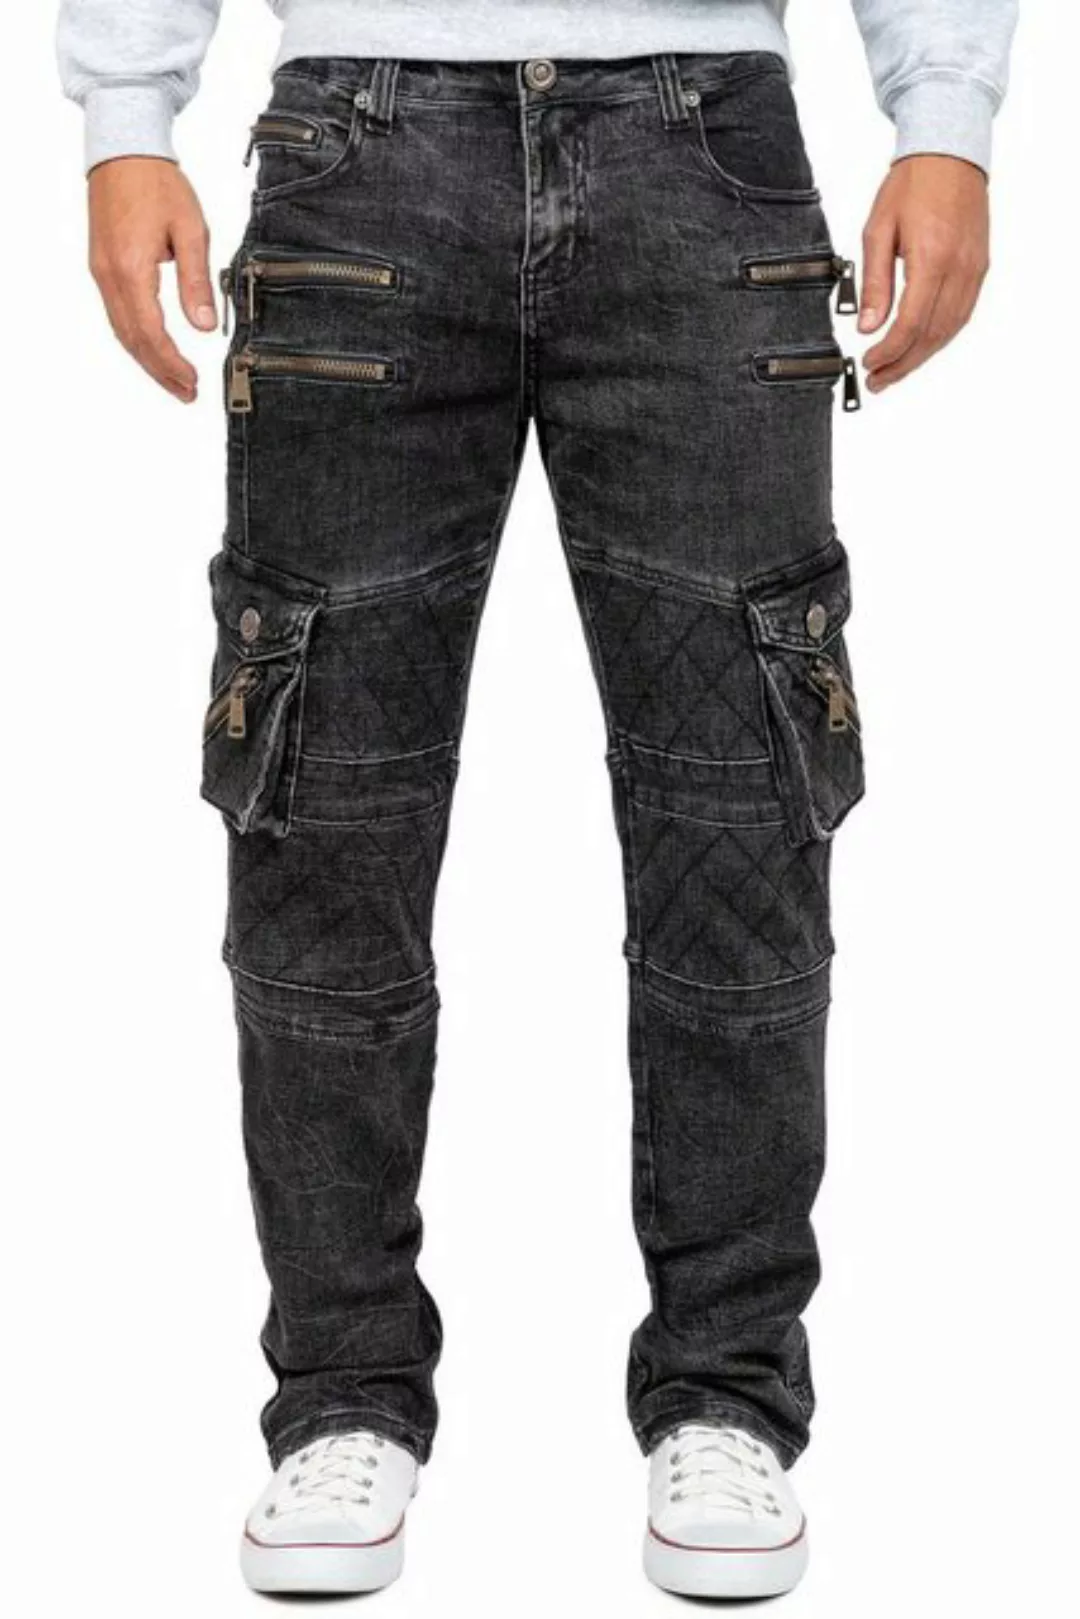 Kosmo Lupo 5-Pocket-Jeans Auffällige Herren Hose BA-KM060-1 Schwarz W34/L34 günstig online kaufen